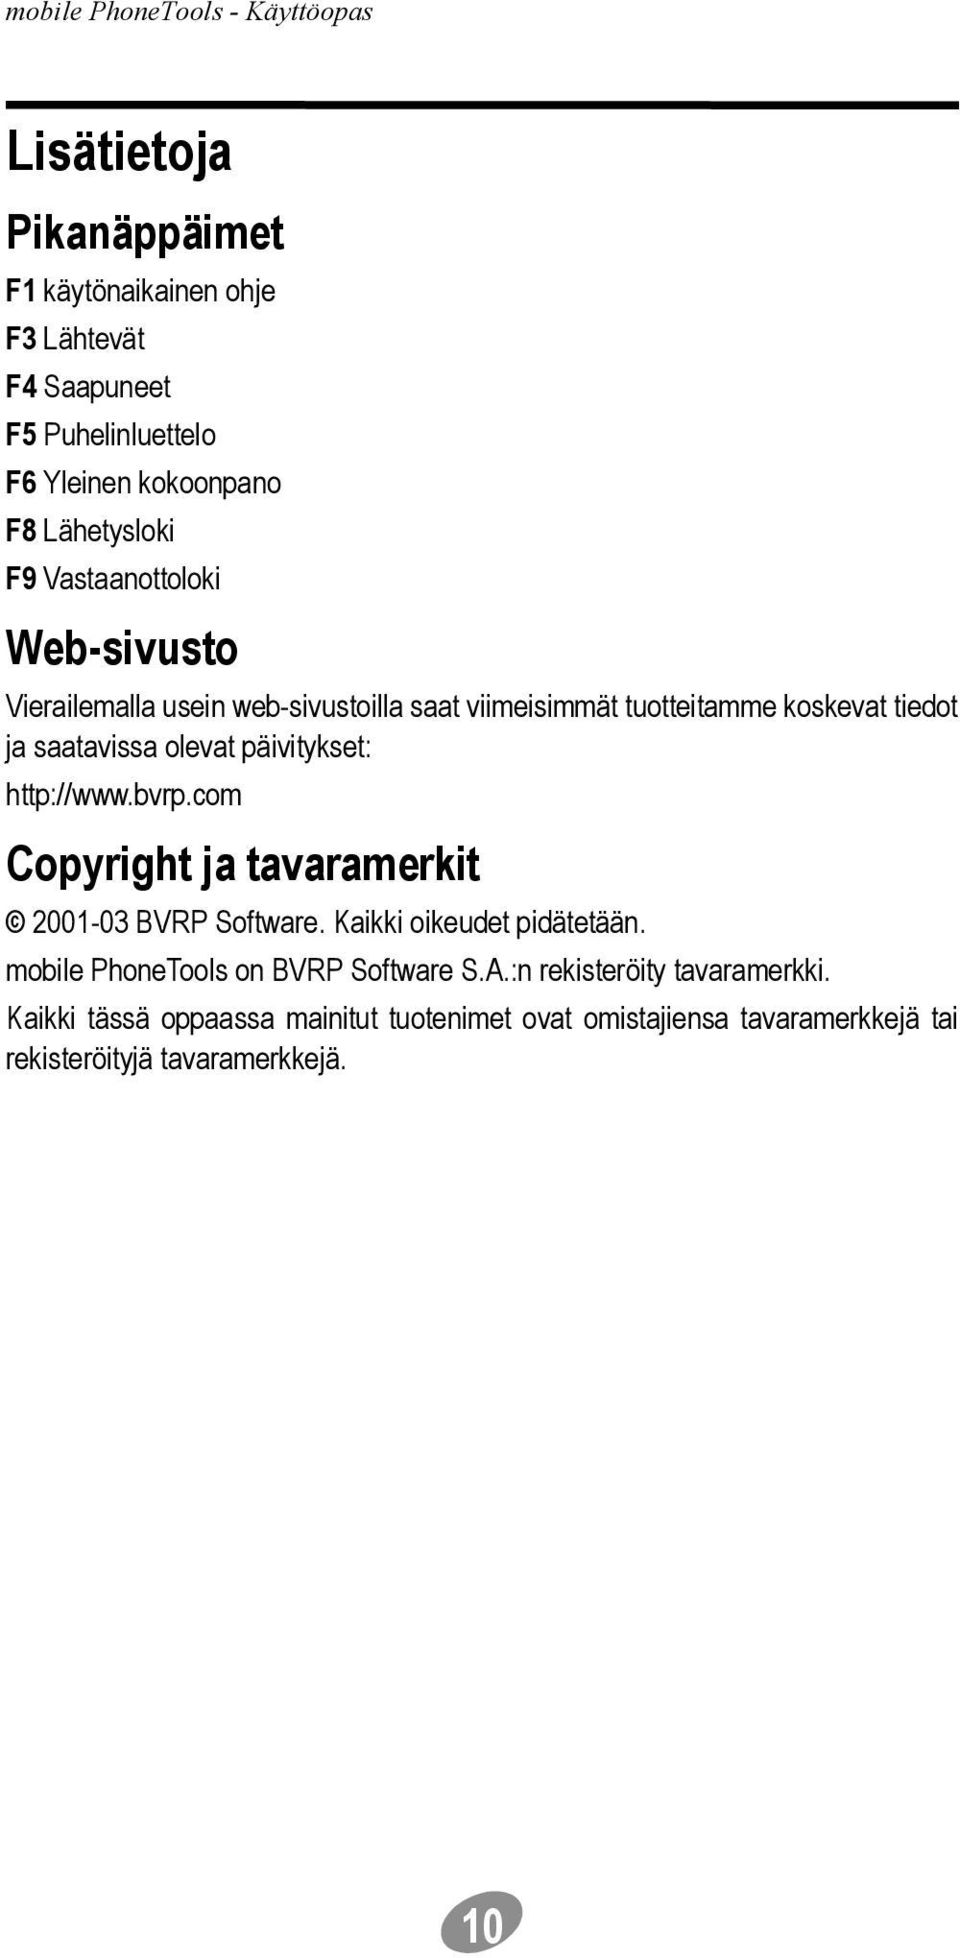 päivitykset: http://www.bvrp.com Copyright ja tavaramerkit 2001-03 BVRP Software. Kaikki oikeudet pidätetään.